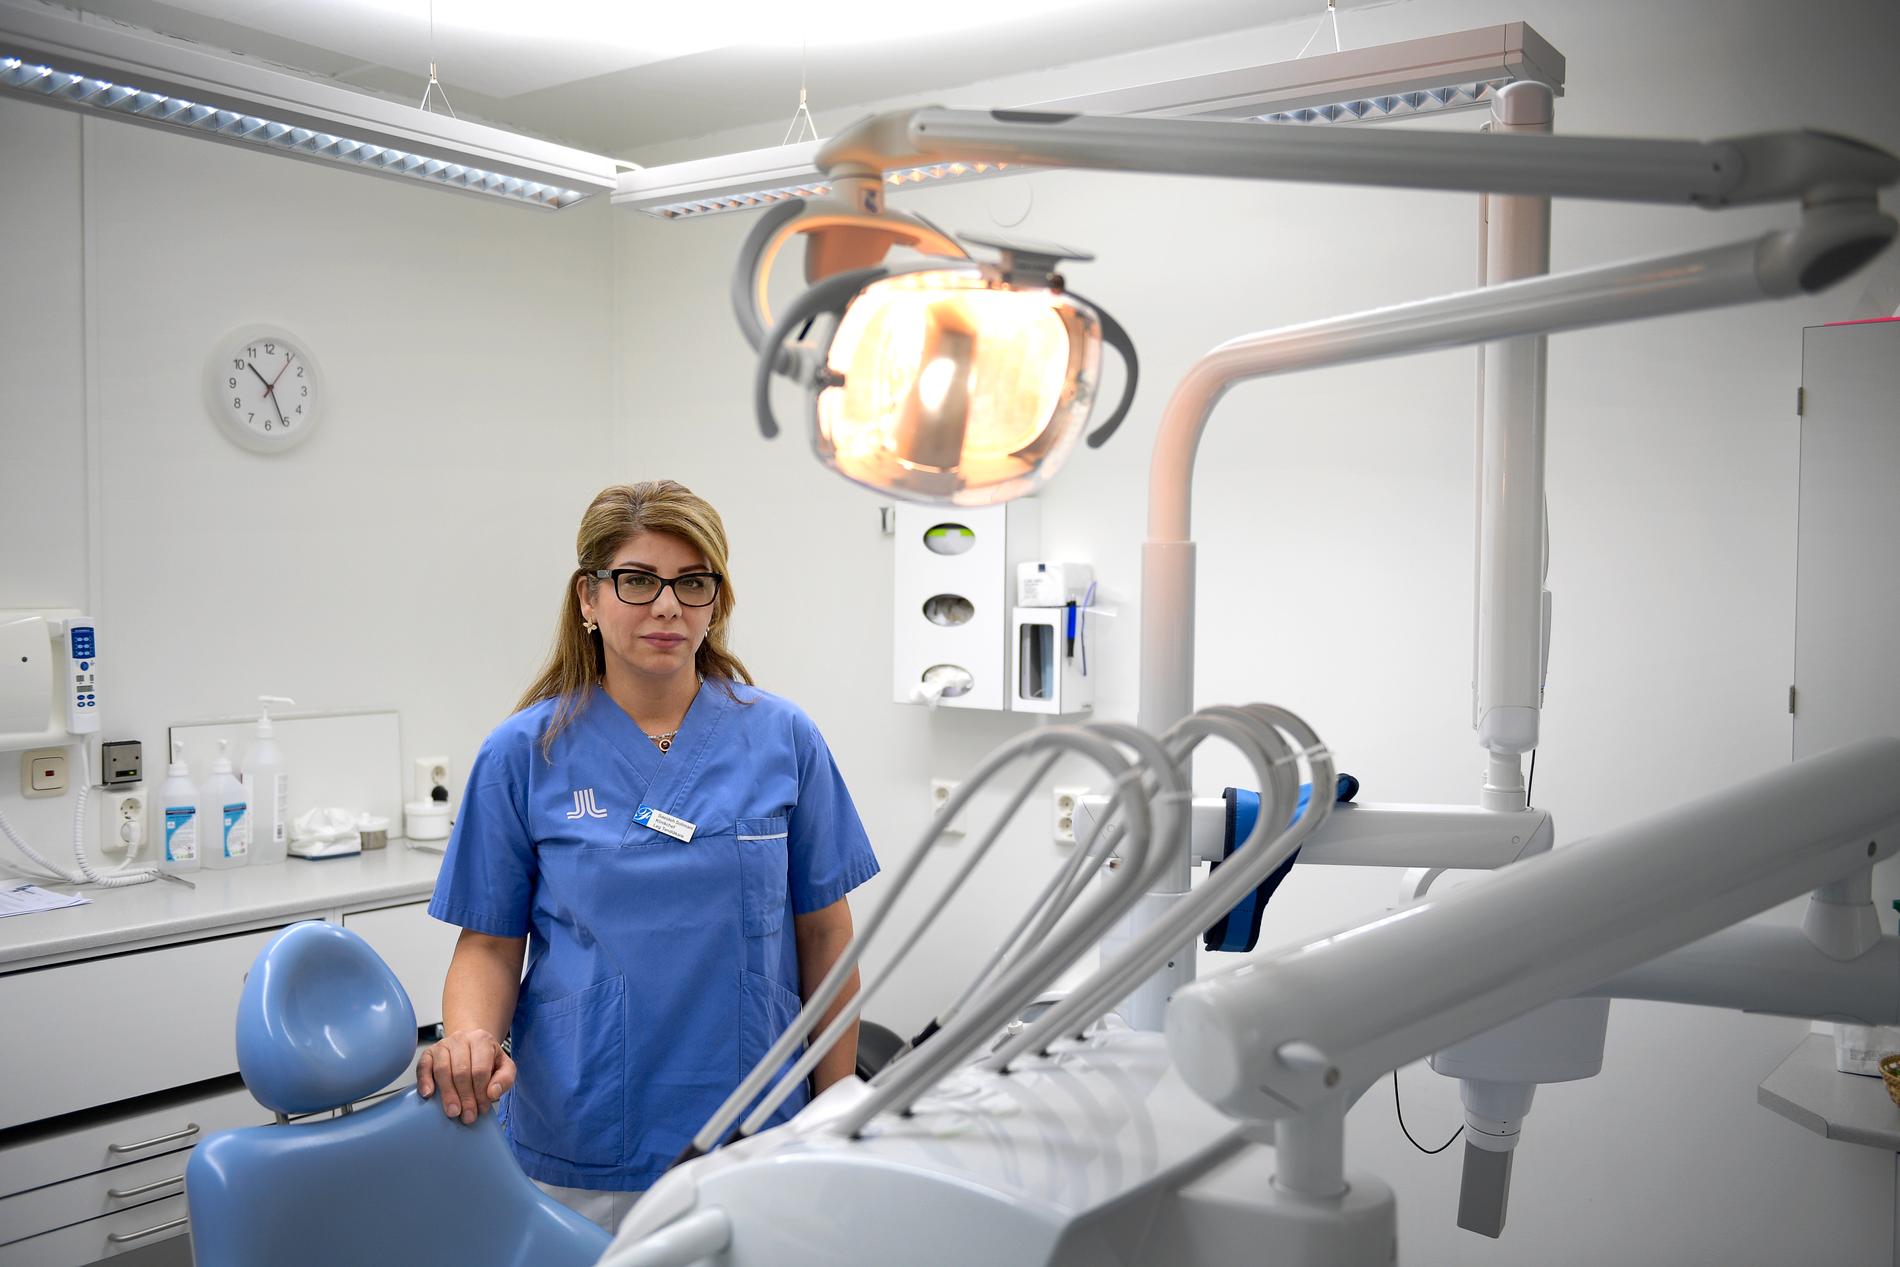 Saeideh Solimani, klinikchef på Folktandvården i Rinkeby, möter många patienter som dragit sig för att gå till tandläkaren på grund av att de inte anser sig ha råd. Ofta är deras tandvårdsbehov både stora och komplexa.